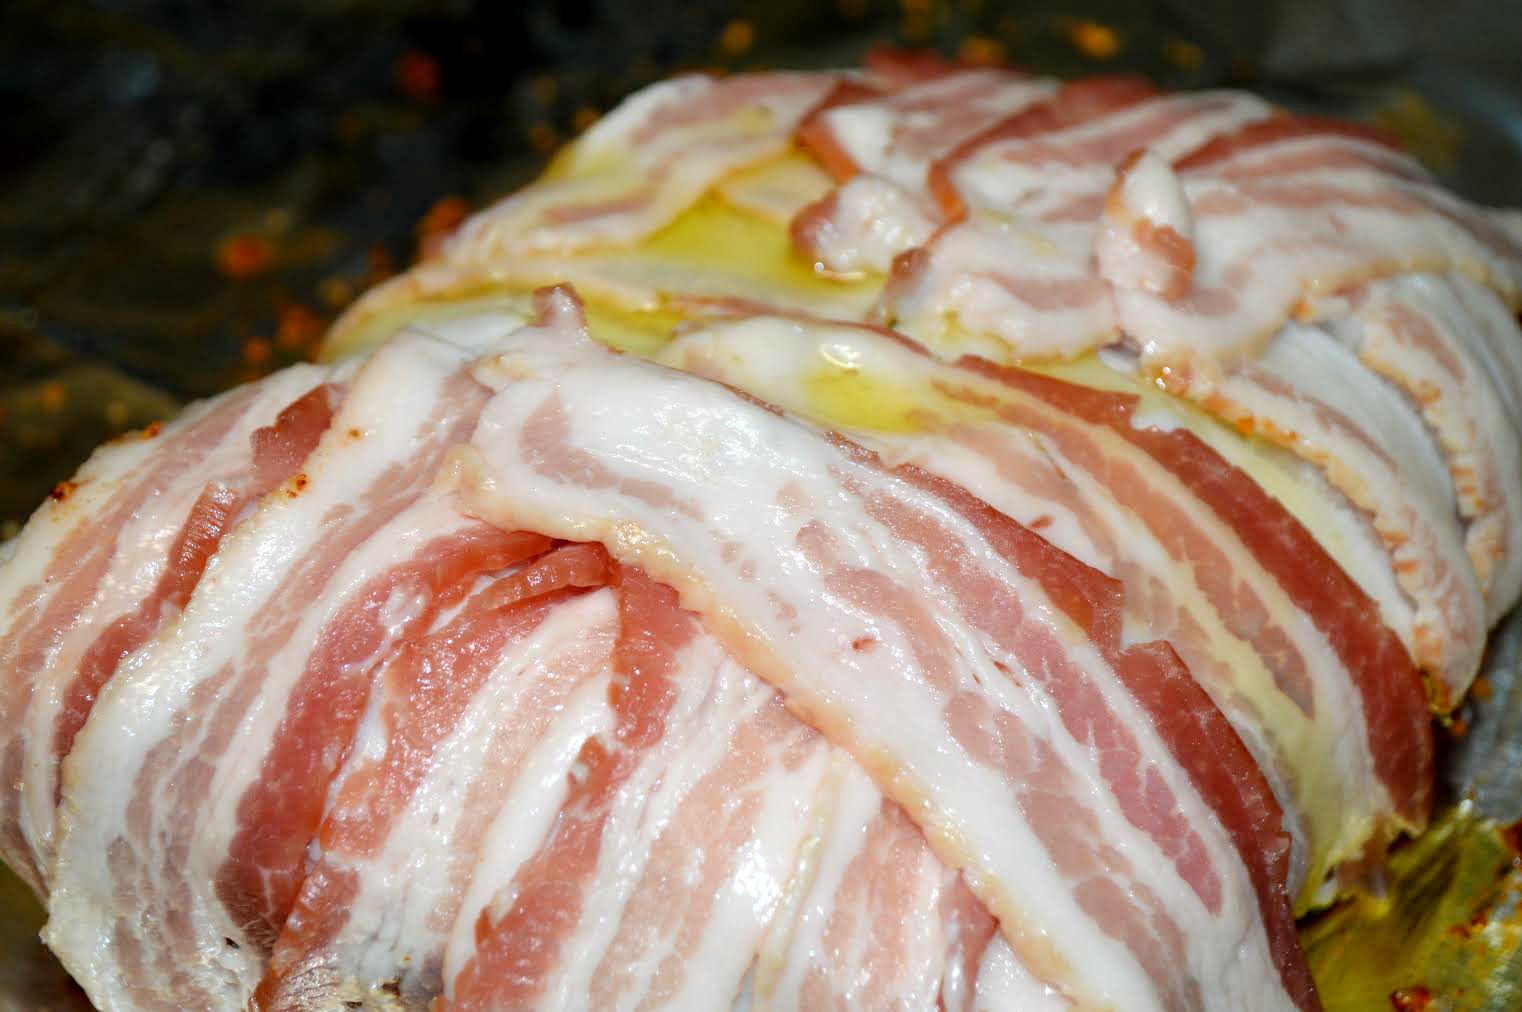 bacon wrapped tenderloin prep 2 sff